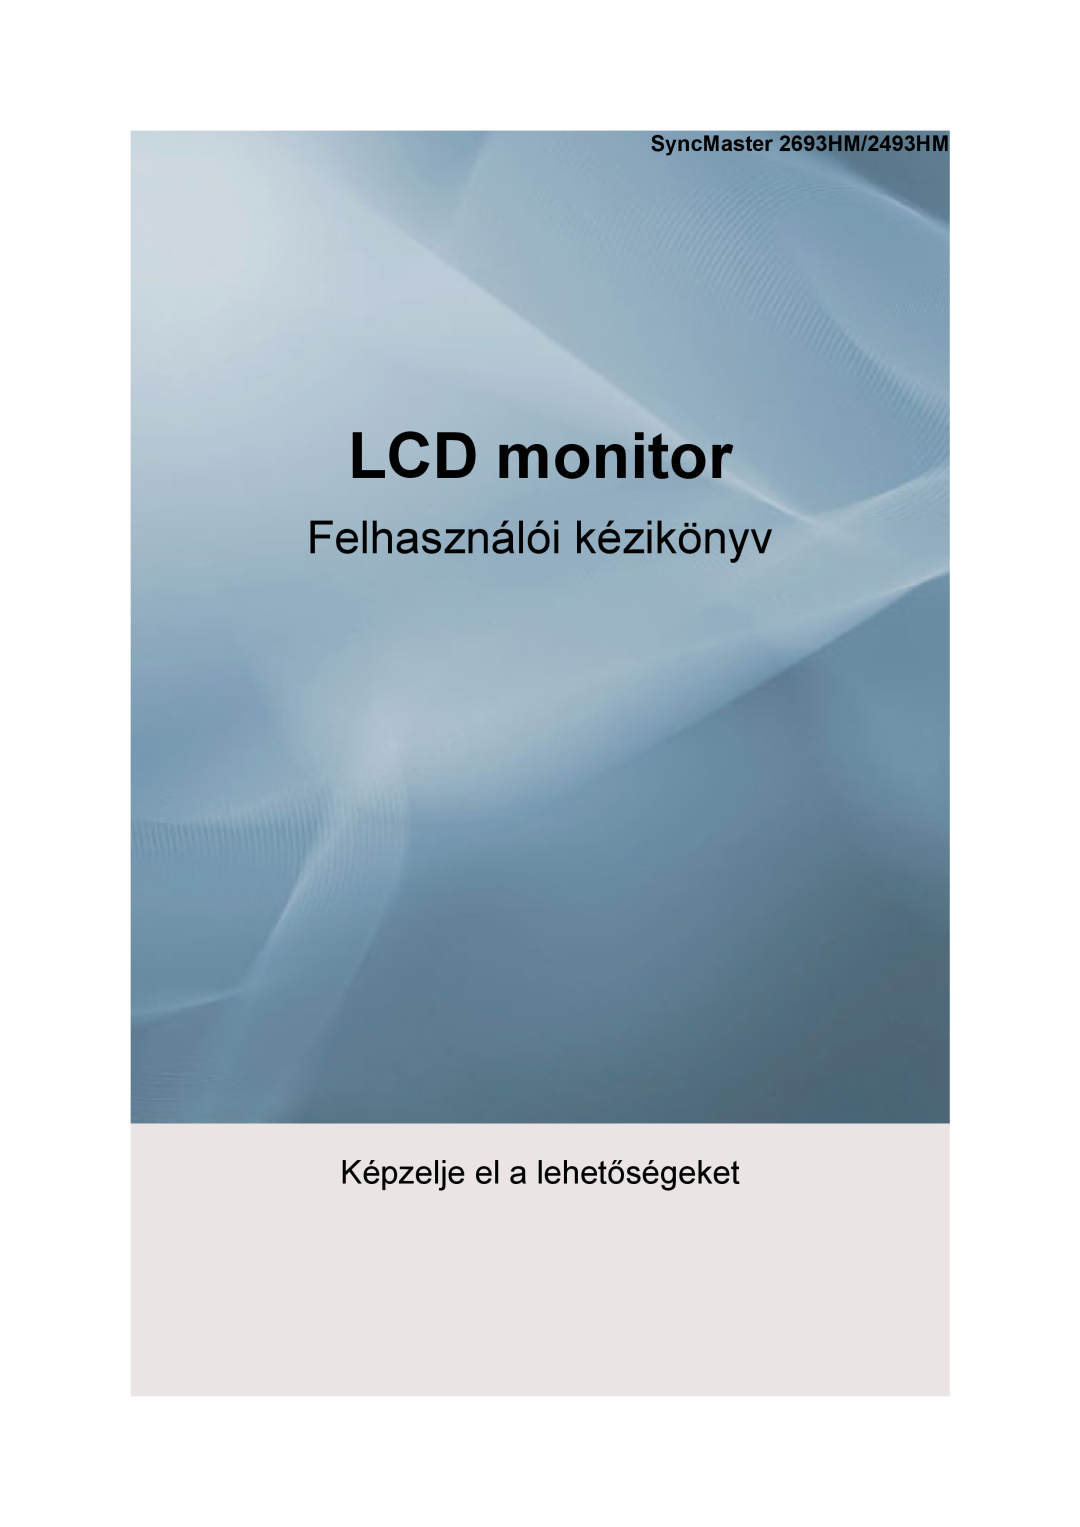 Samsung LS24KIEEFV/EDC manual SyncMaster 2693HM/2493HM, LCD monitor, Felhasználói kézikönyv, Képzelje el a lehetőségeket 